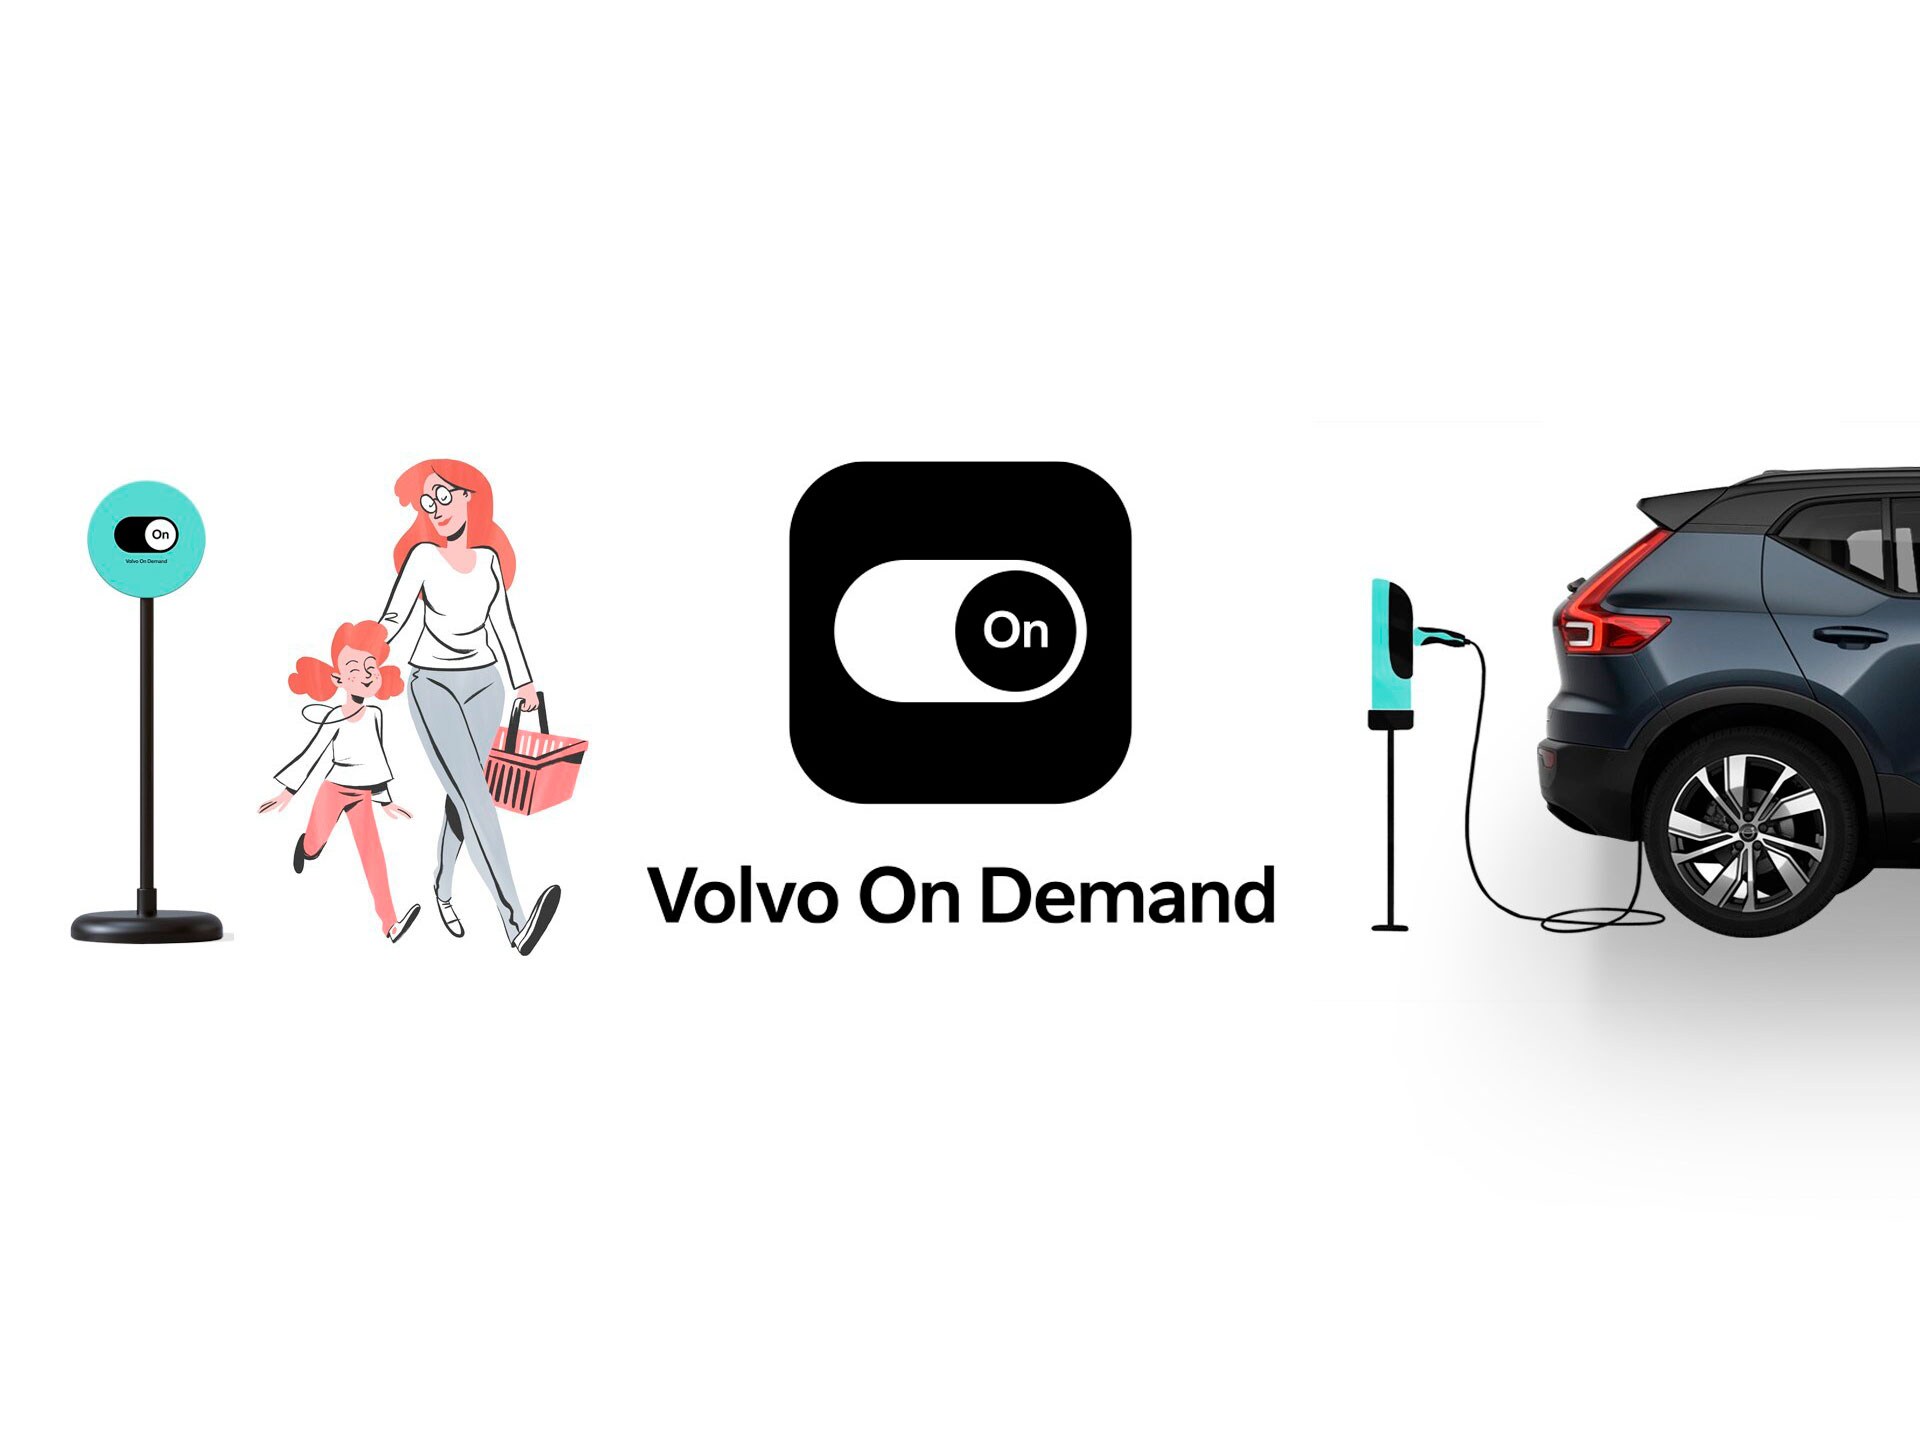 Volvo On Demand cambiará la forma de ver la movilidad sostenible en la ciudad